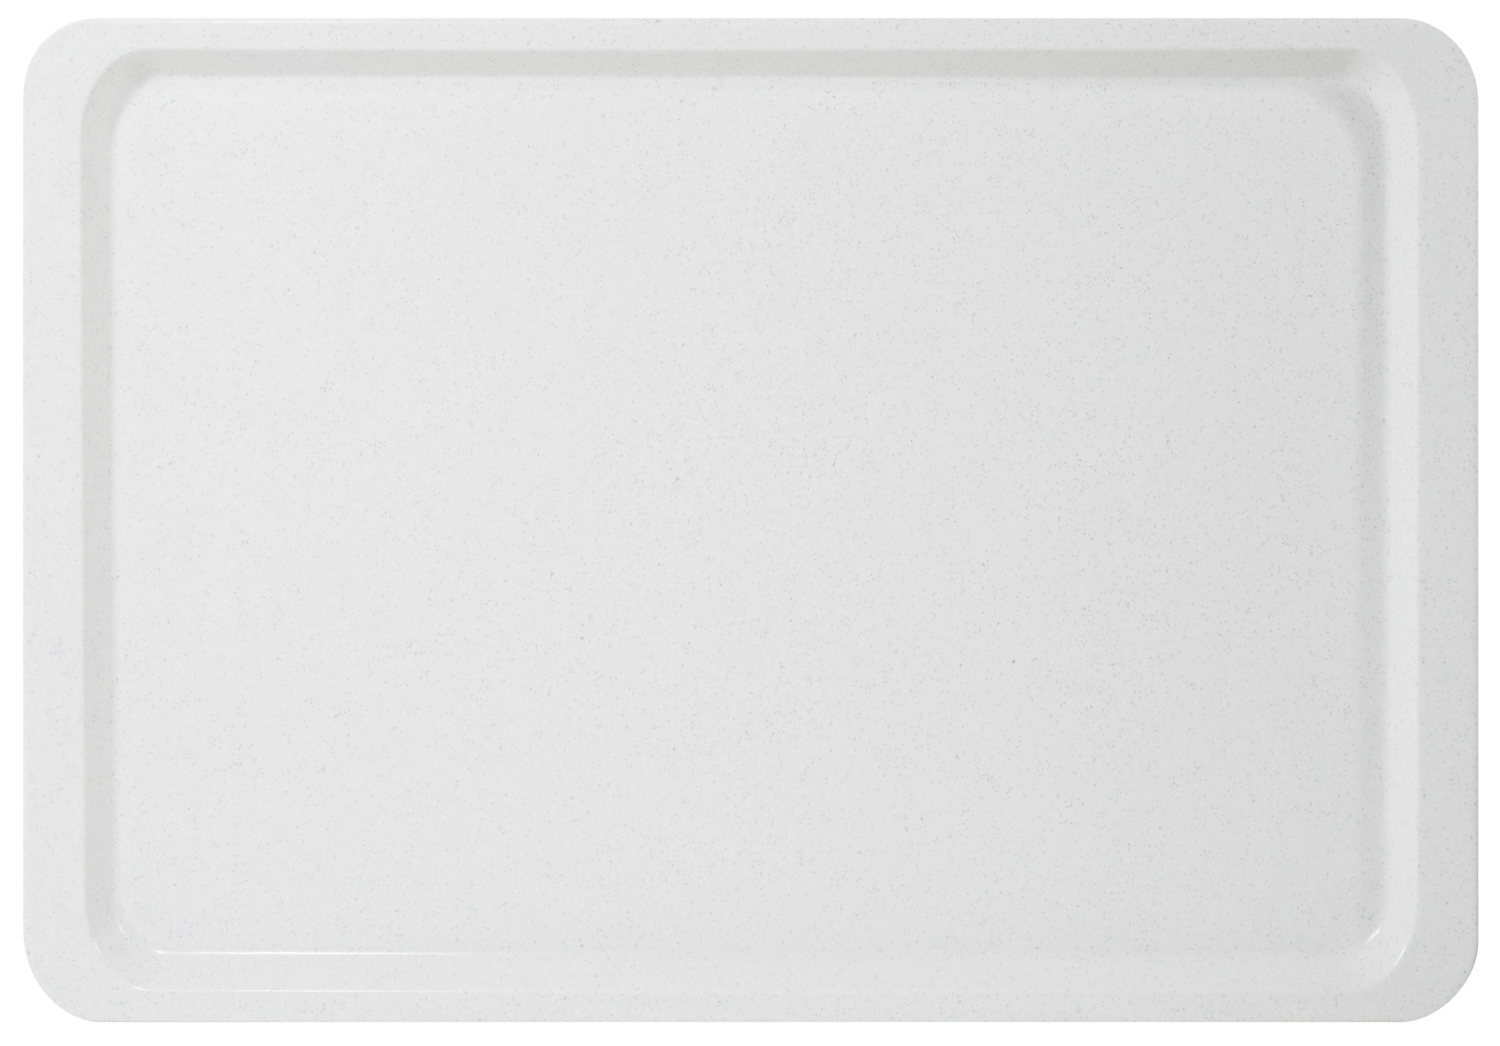 Tablett EASY Gastronorm GN 1/1, Farbe: weiss, aus glasfaserverstärktem Polyesterharz, Länge: 530 mm, Breite: 325 mm, Höhe: 16 mm